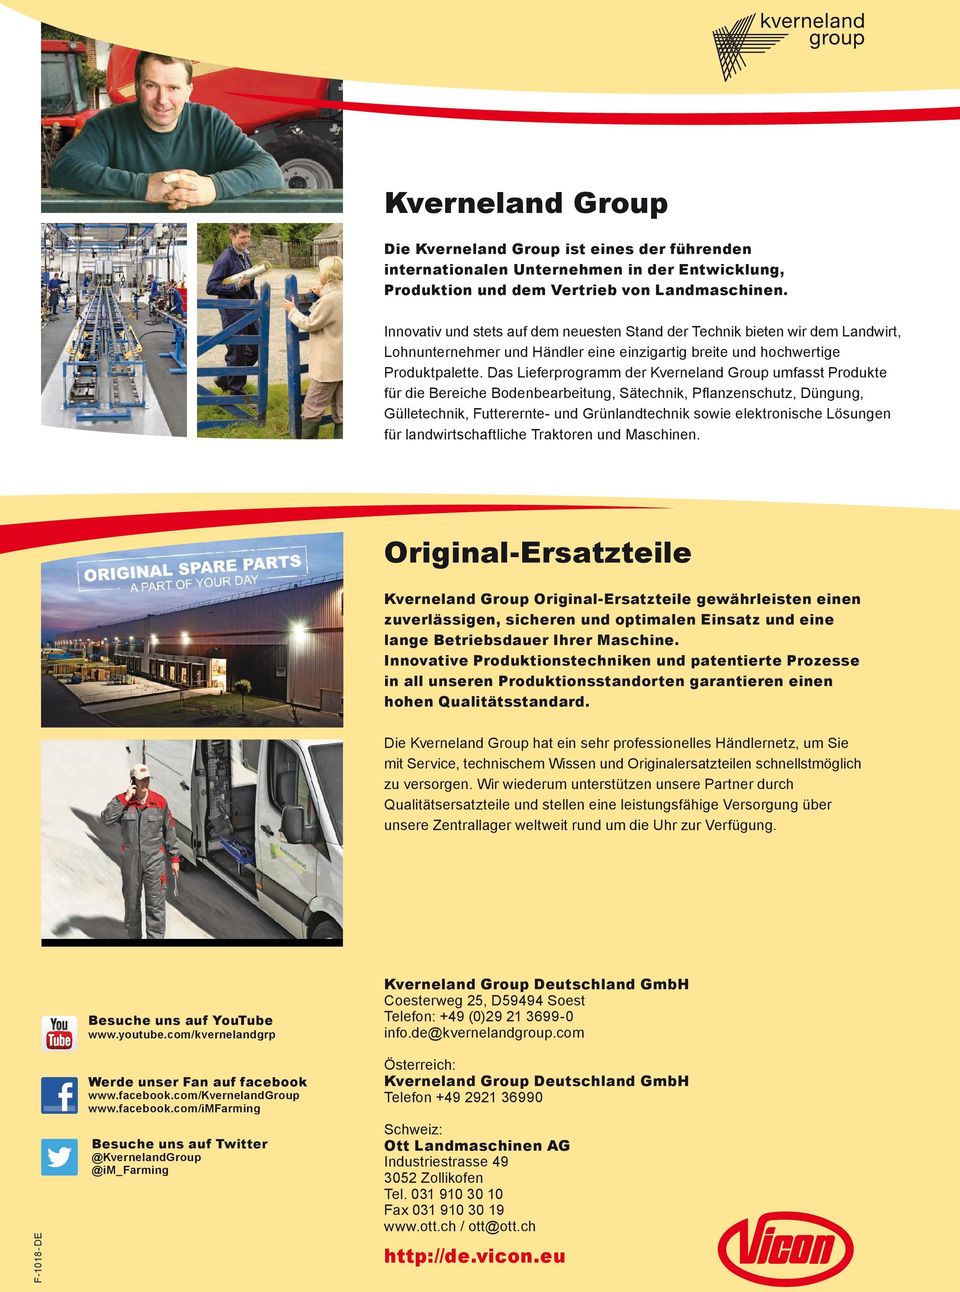 Das Lieferprogramm der Kverneland Group umfasst Produkte für die Bereiche Bodenbearbeitung, Sätechnik, Pflanzenschutz, Düngung, Gülletechnik, Futterernte- und Grünlandtechnik sowie elektronische